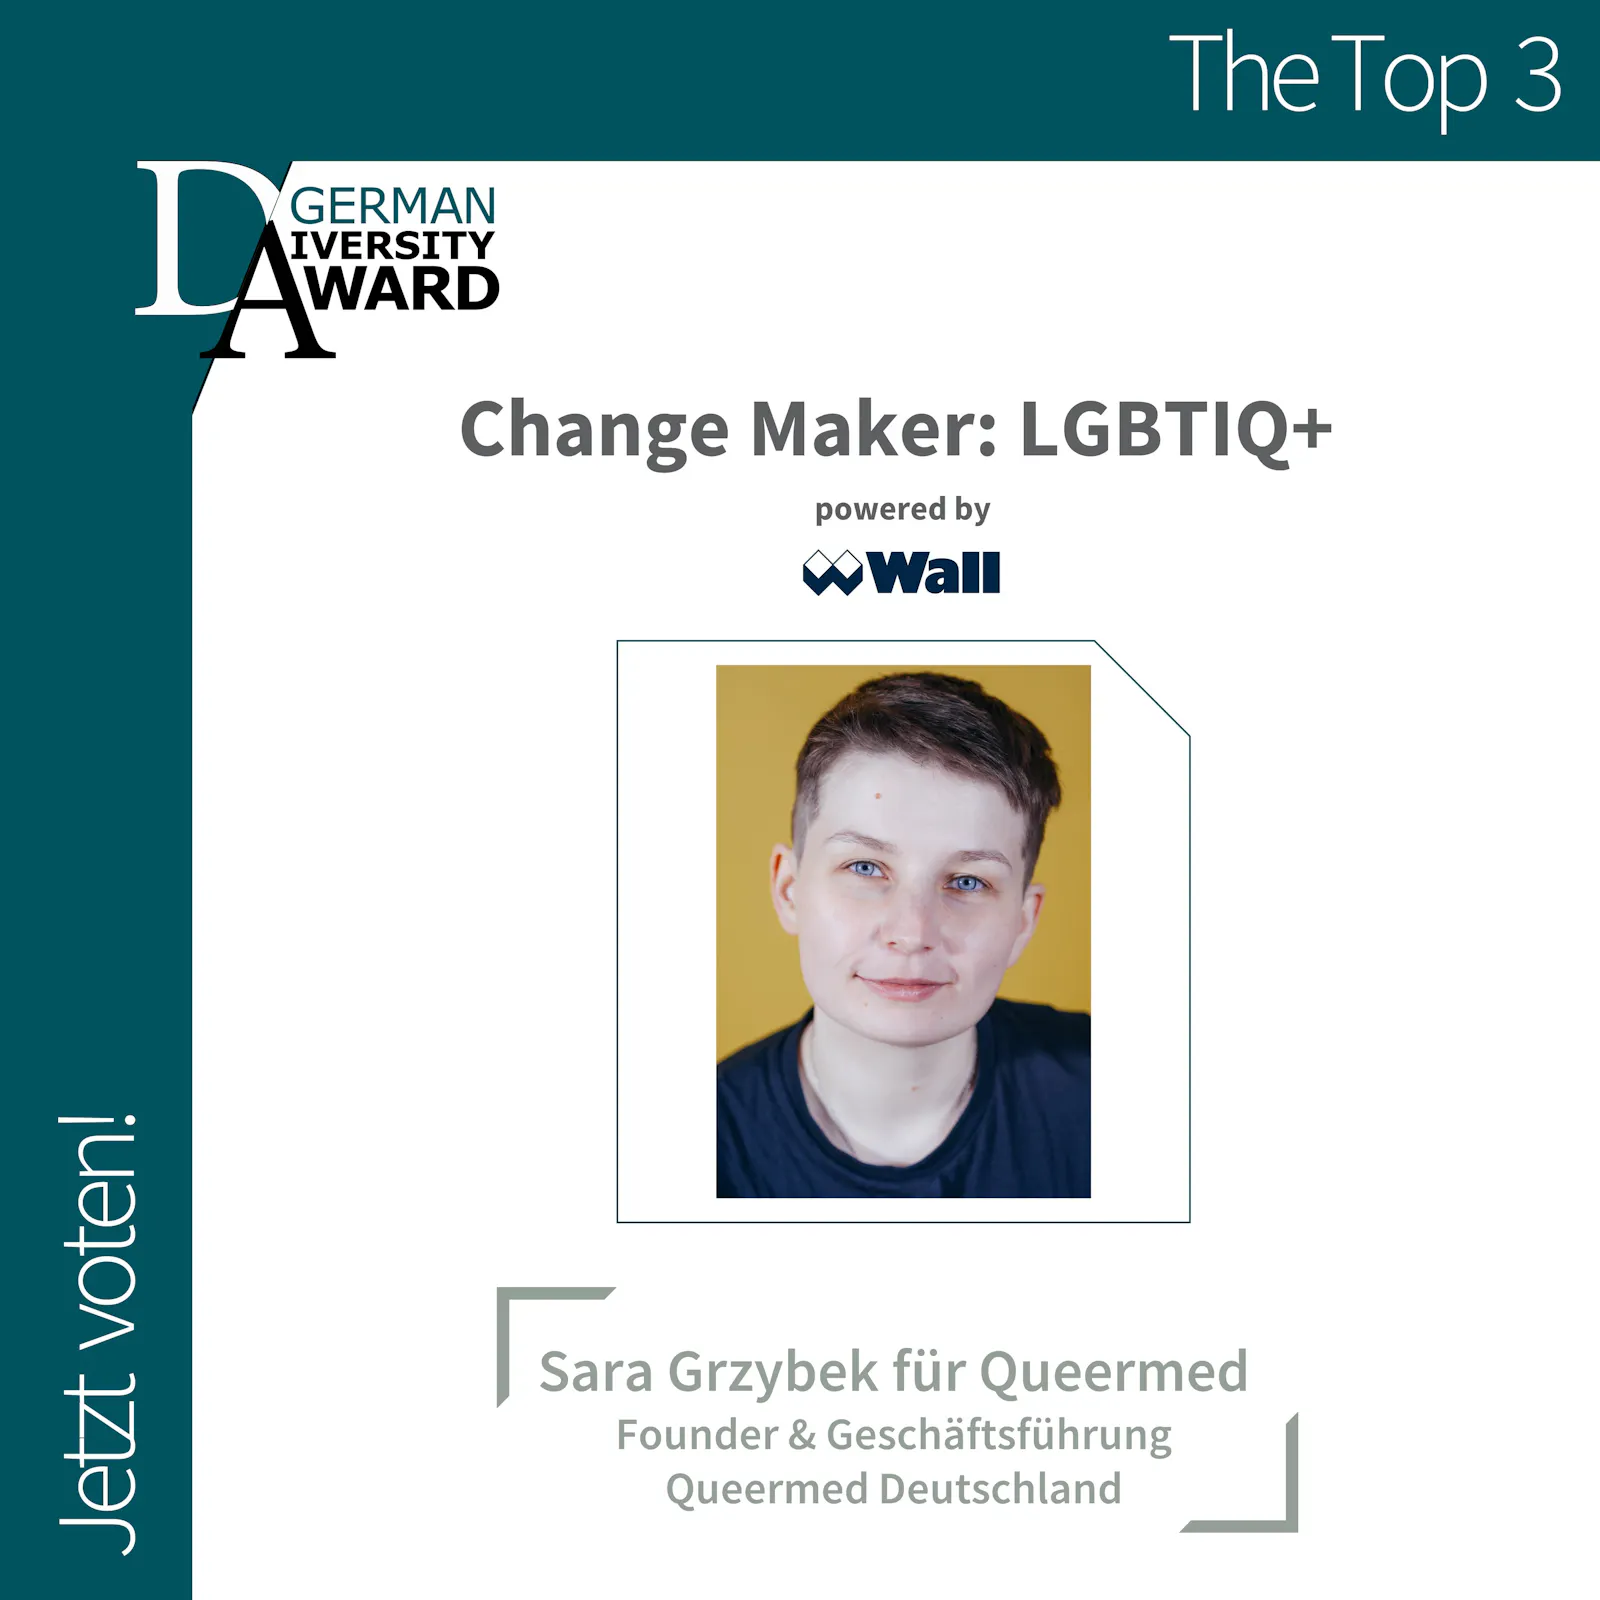 Sara Grzybek von Queermed Deutschland nominiert in der Top 3 der Kategorie "Change Maker: LGBTIQ+"